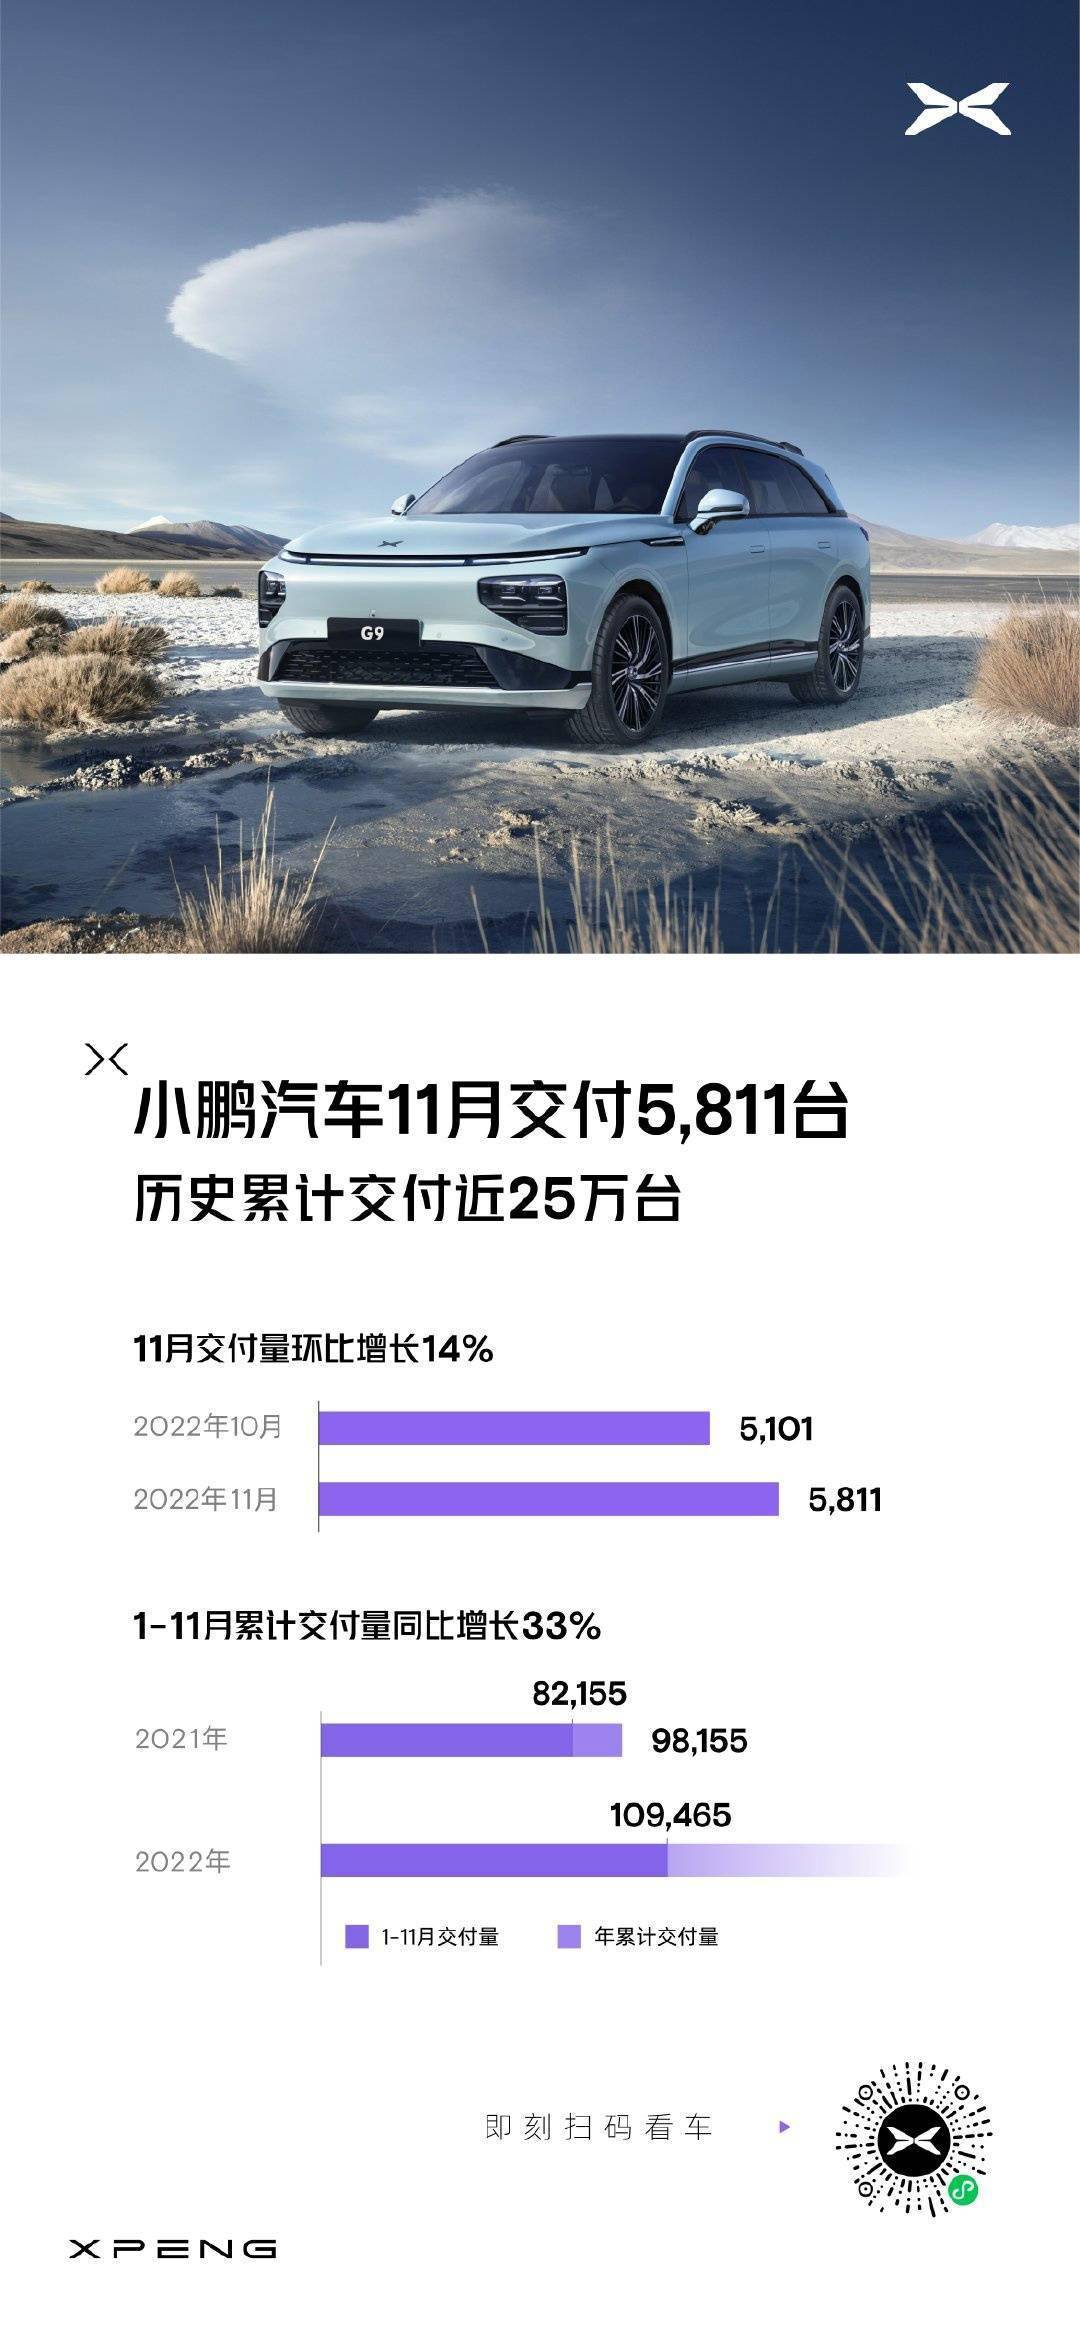 小鹏汽车 11 月总交付 5811 辆，环比增长 14%